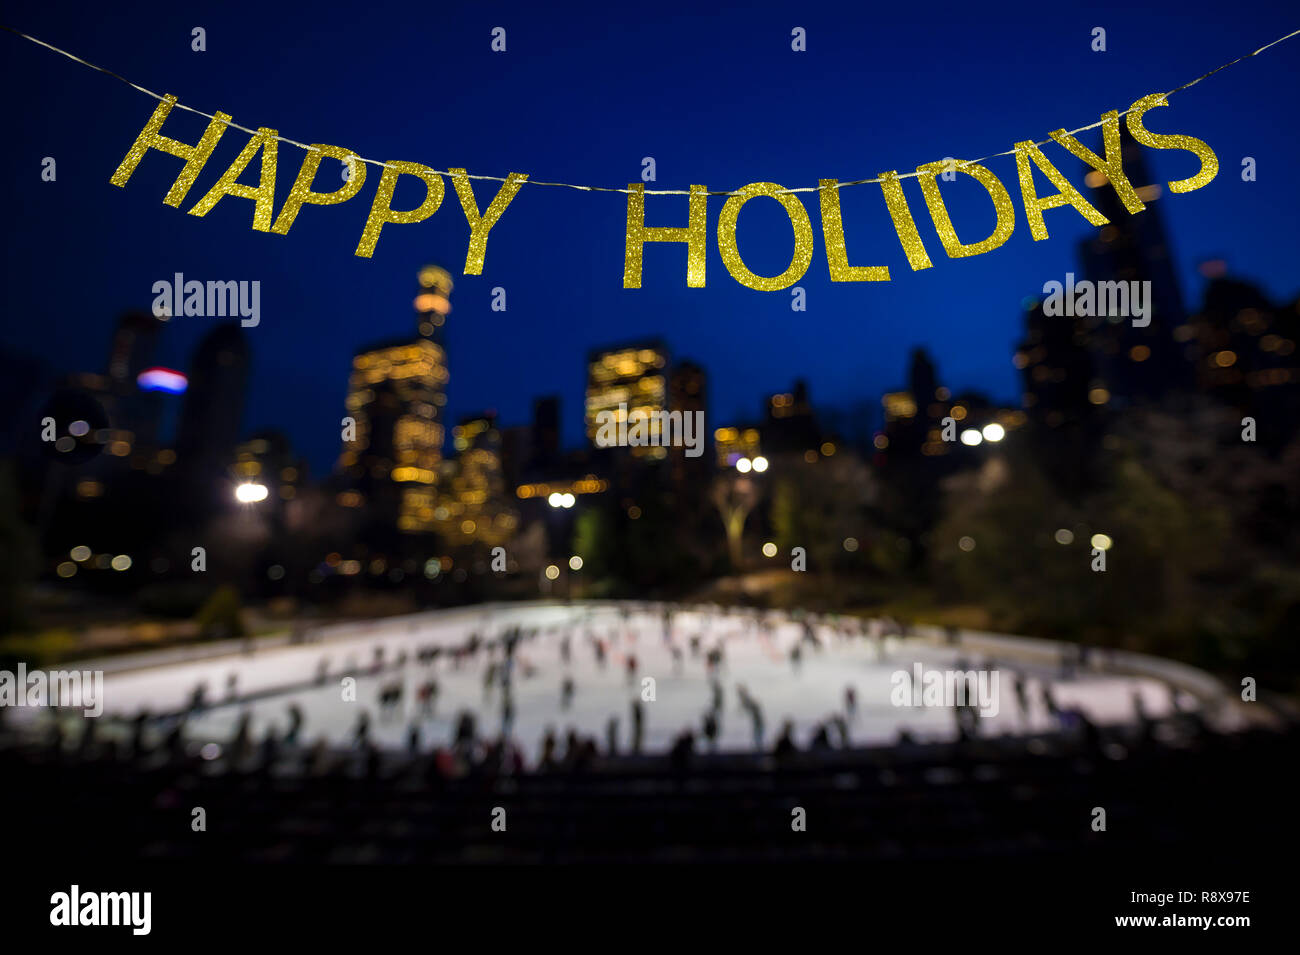 Happy Holidays Nachricht in glänzendem Gold Briefe in den Himmel über einem langen Eisbahn durch die funkelnden Lichter der Stadt umgeben Stockfoto